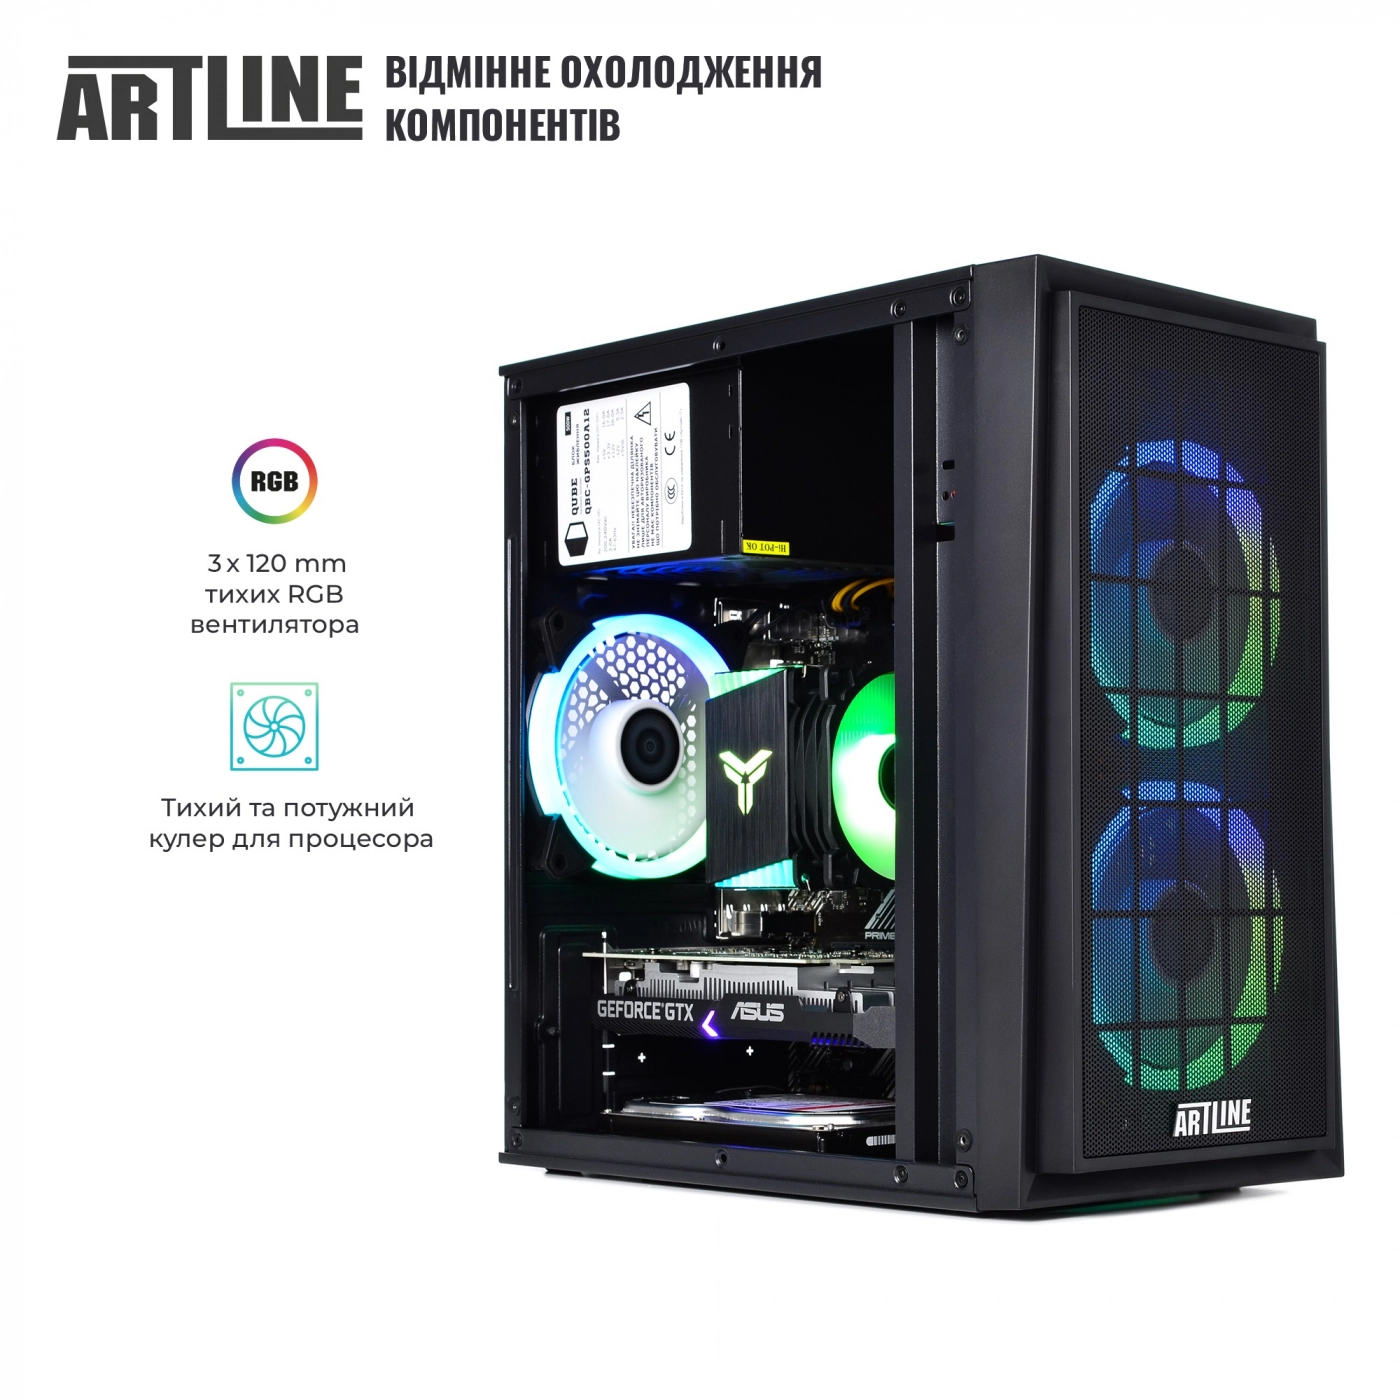 Купить Компьютер ARTLINE Gaming X42v02 - фото 2